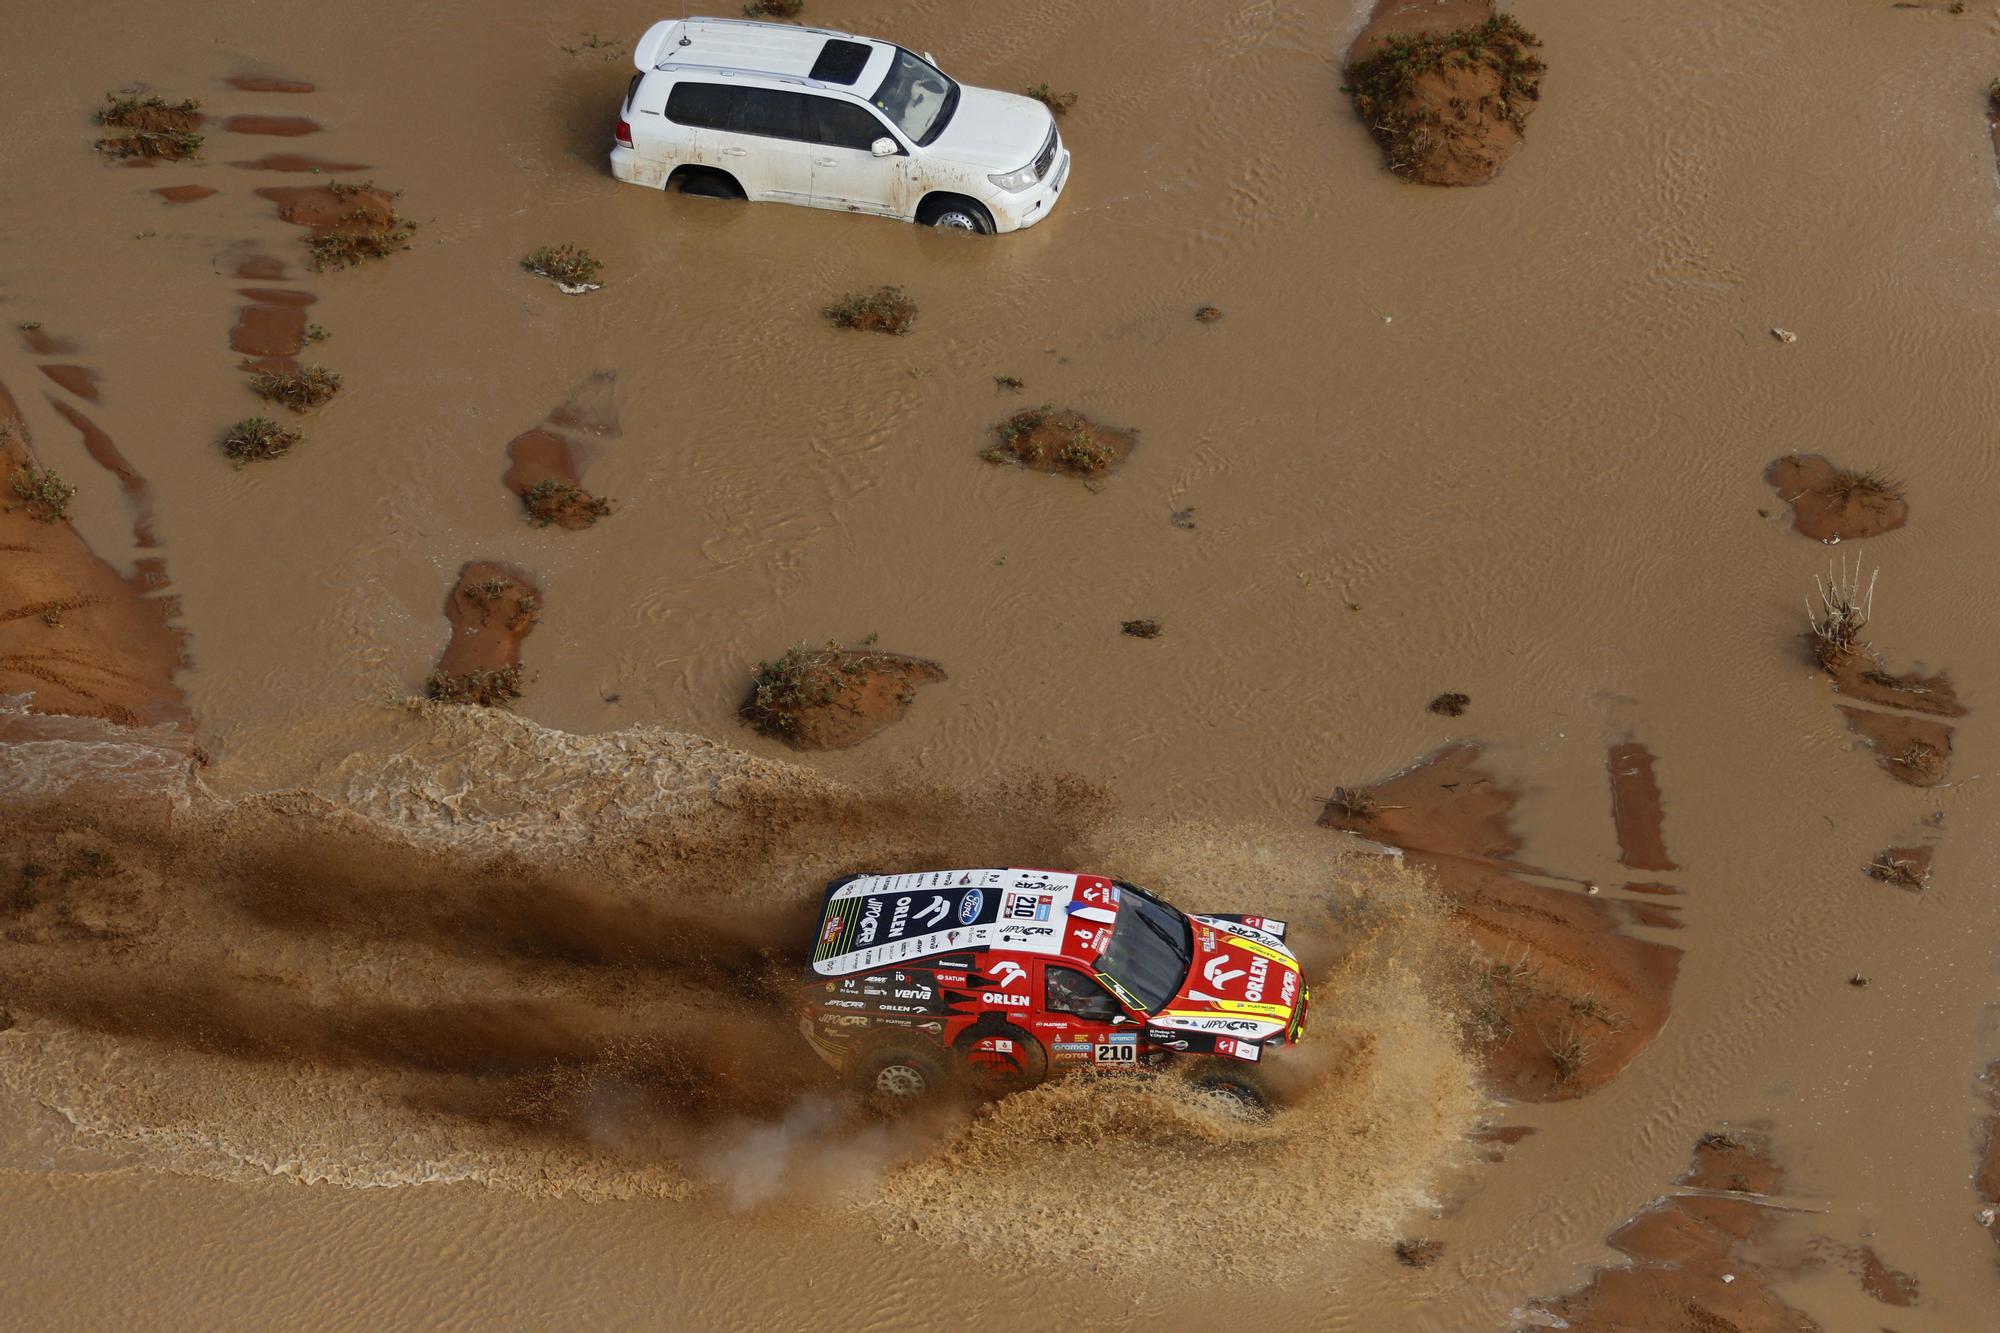 Dakar Rally (163386623).jpg